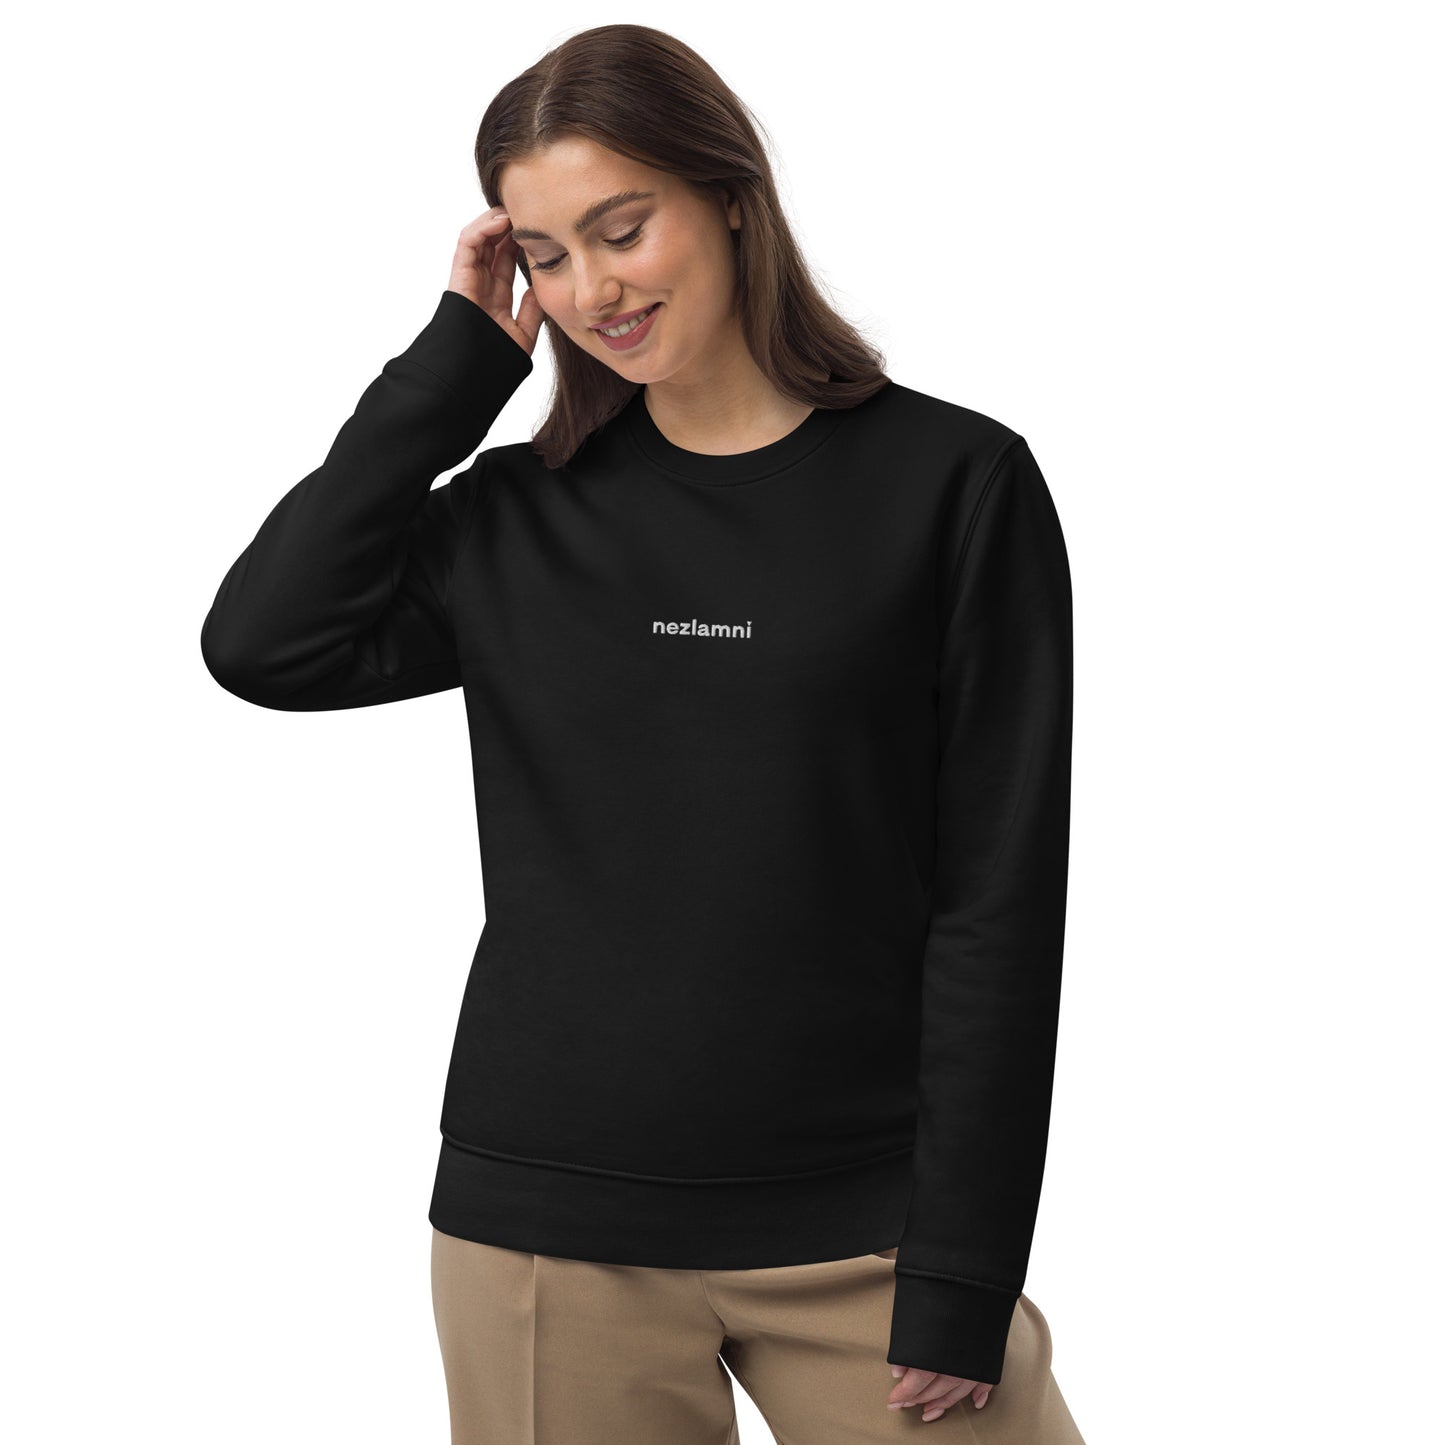 Nezlamni embroidered unisex eco sweatshirt in black